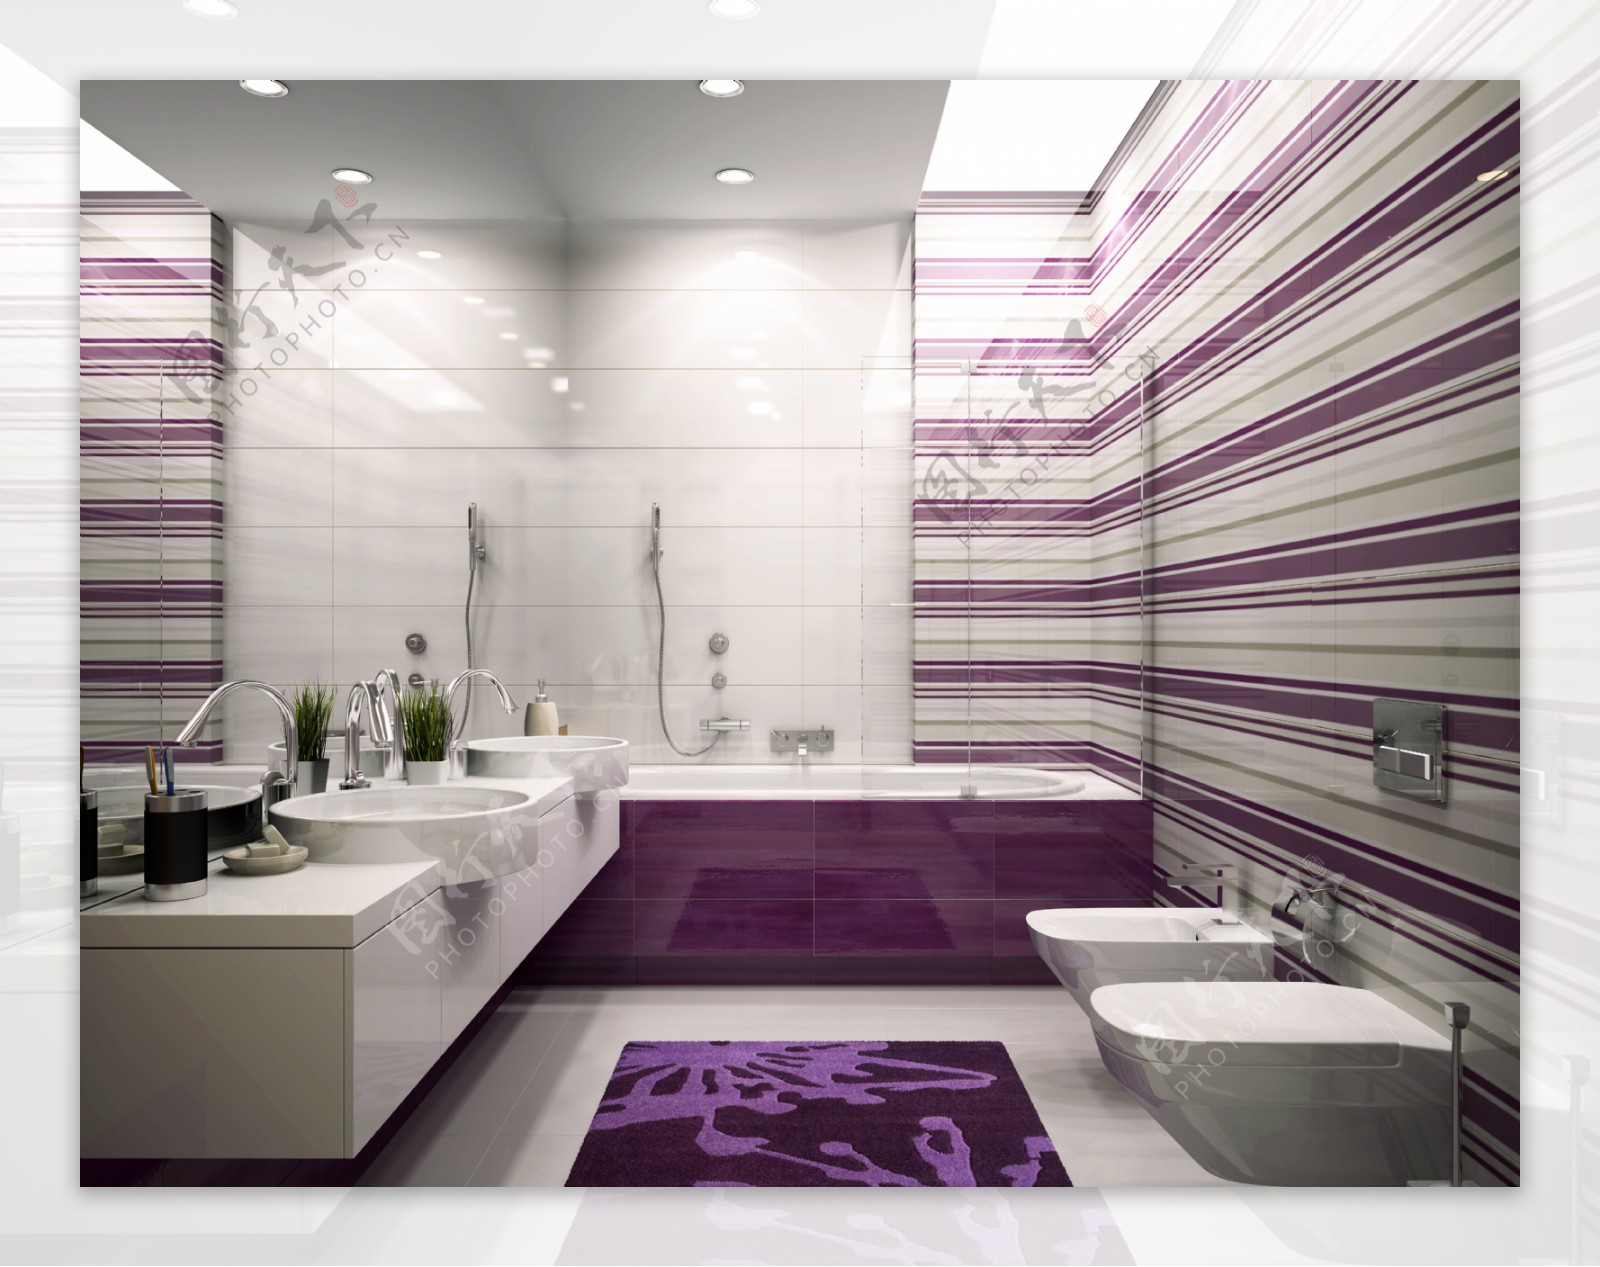 紫色调卫生间设计